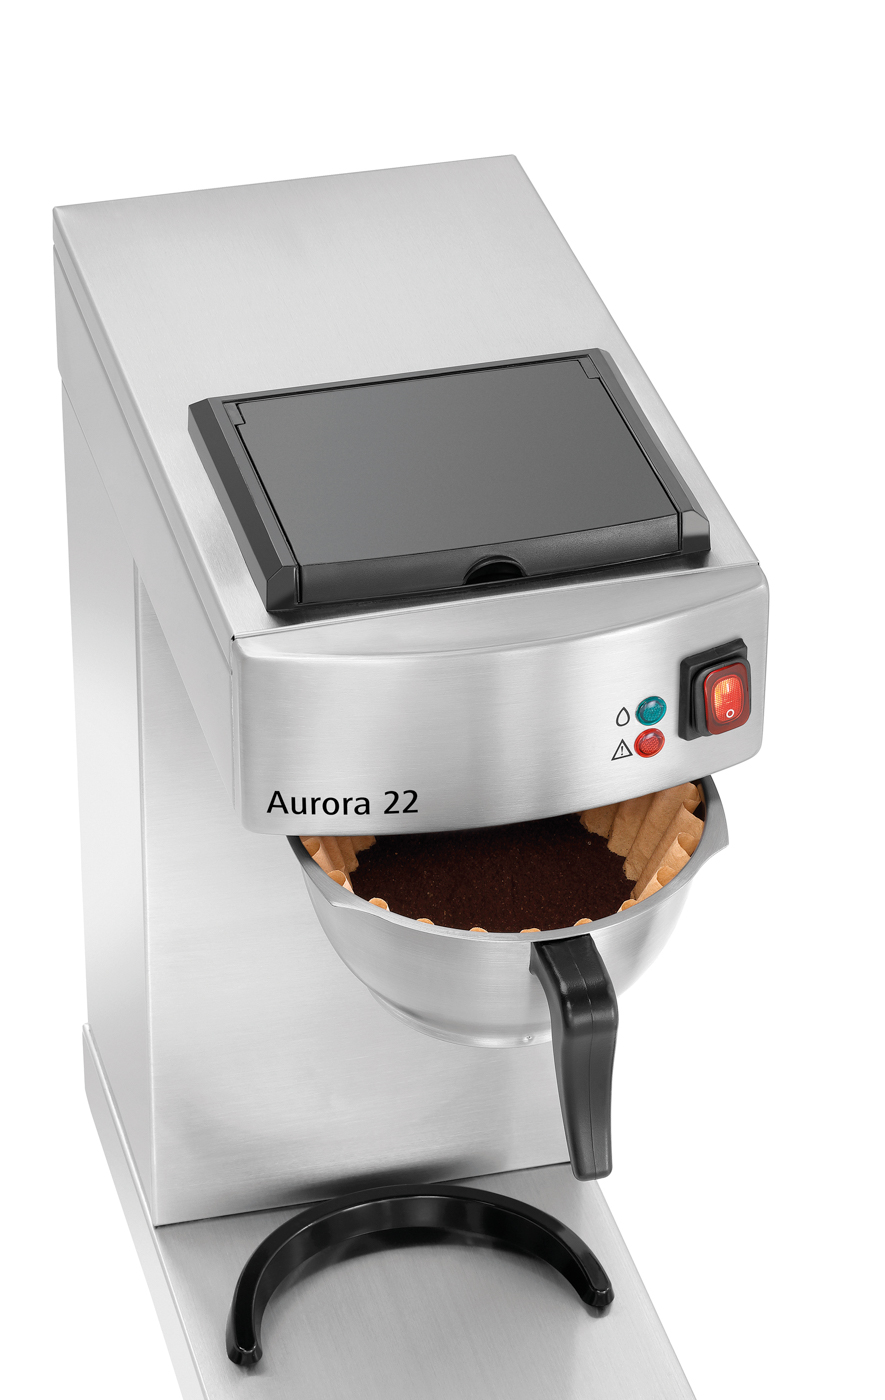 Bartscher Kaffeemaschine Aurora 22 | Steuerung: Kippschalter | Maße: 21,5 x 40,5 x 520 cm. Gewicht: 8 kg